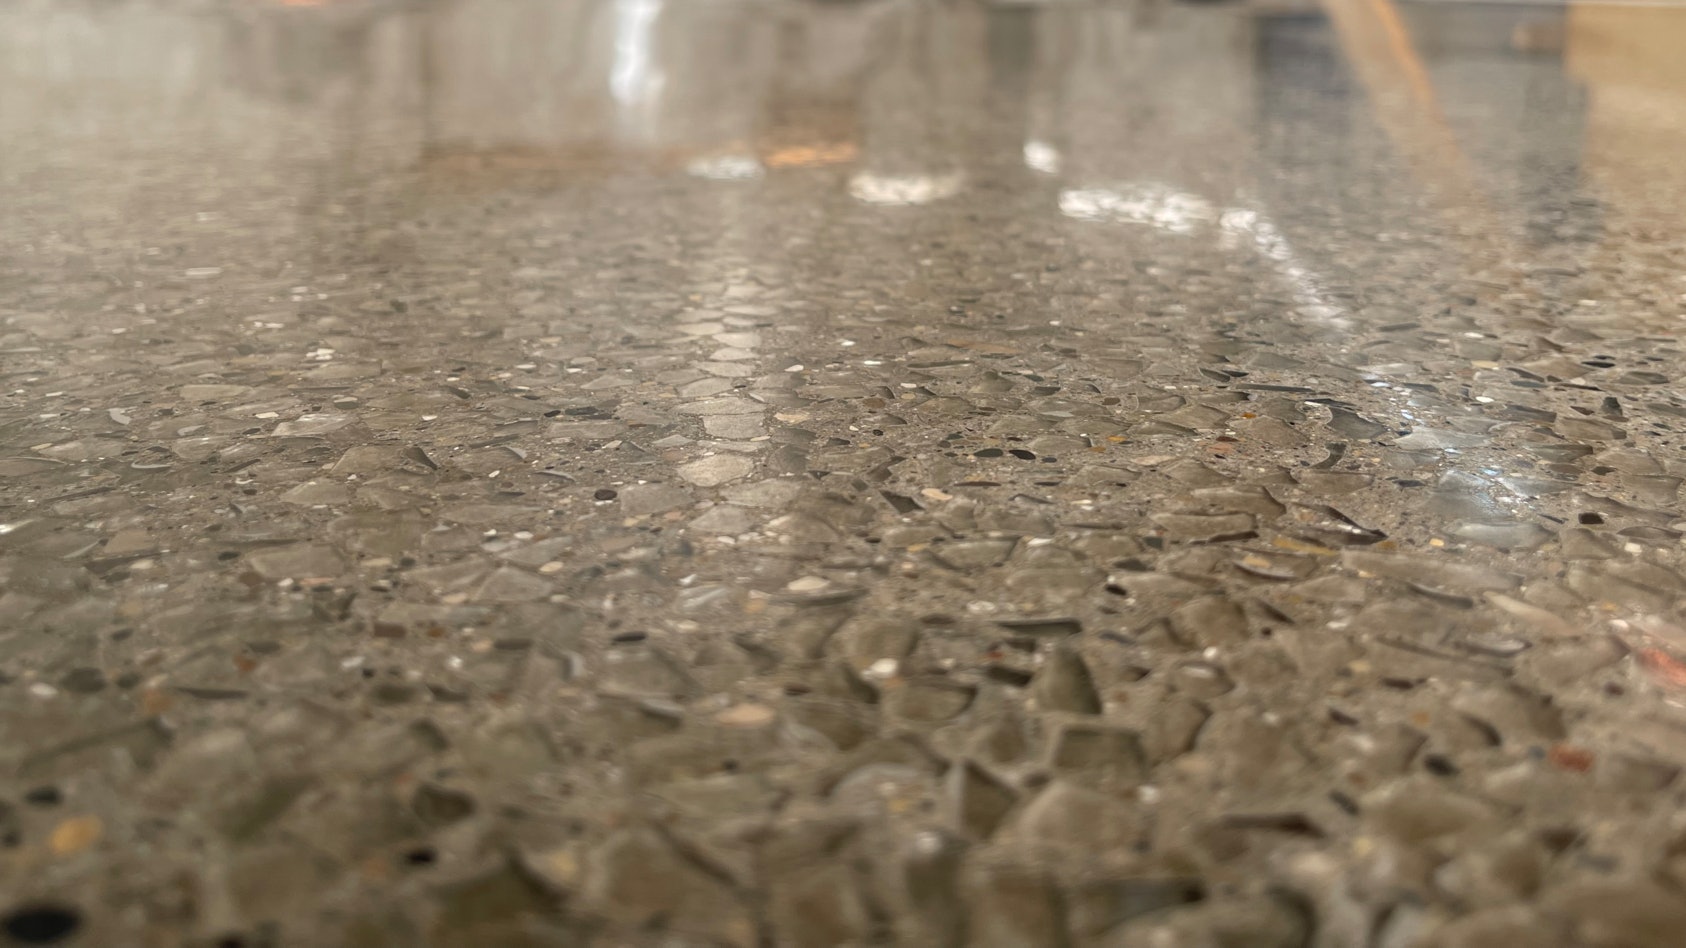 Water Glass Cement Floor Sealer